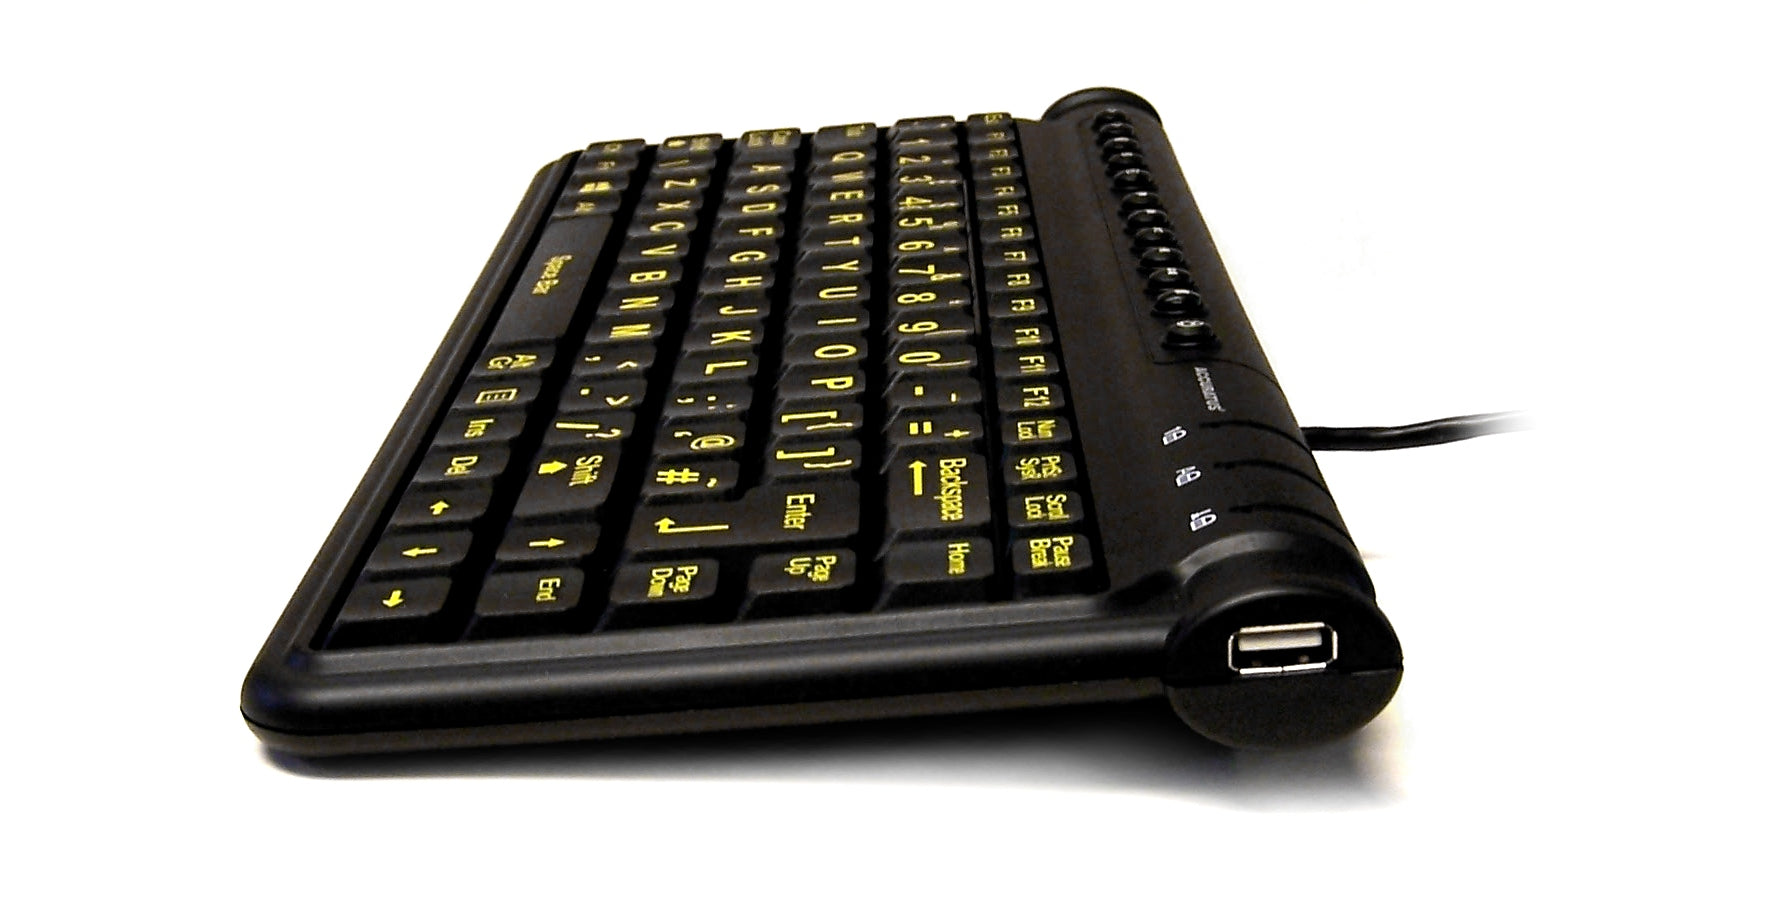 Accuratus Mini Hivis Hub - Mini clavier multimédia USB avec légendes haute visibilité et hub USB2.0 à 2 ports